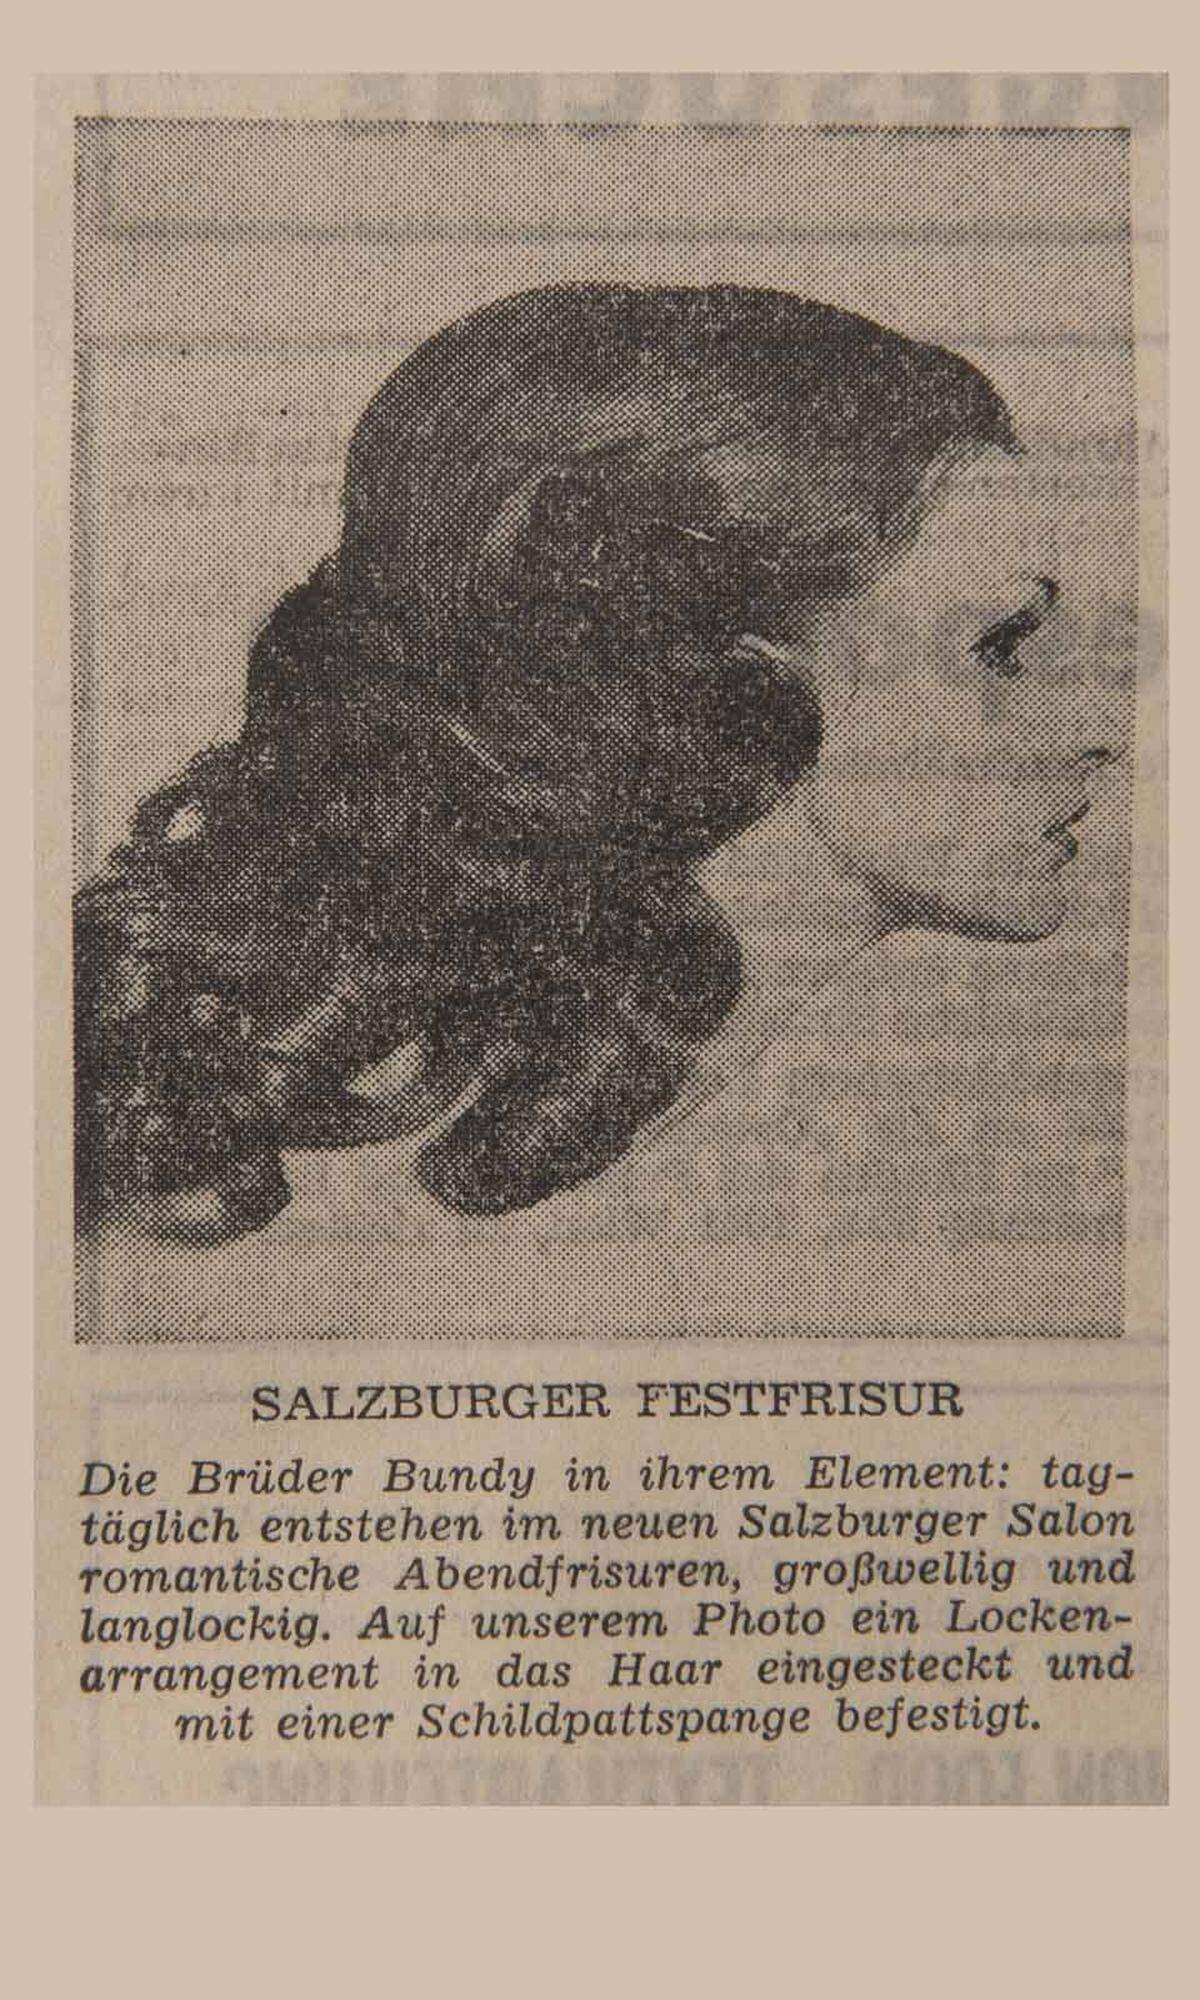 Großwellig und langlockig waren im Salzburger Festspielsommer 1968 die Devisen bei den Friseurbrüdern Bundy.